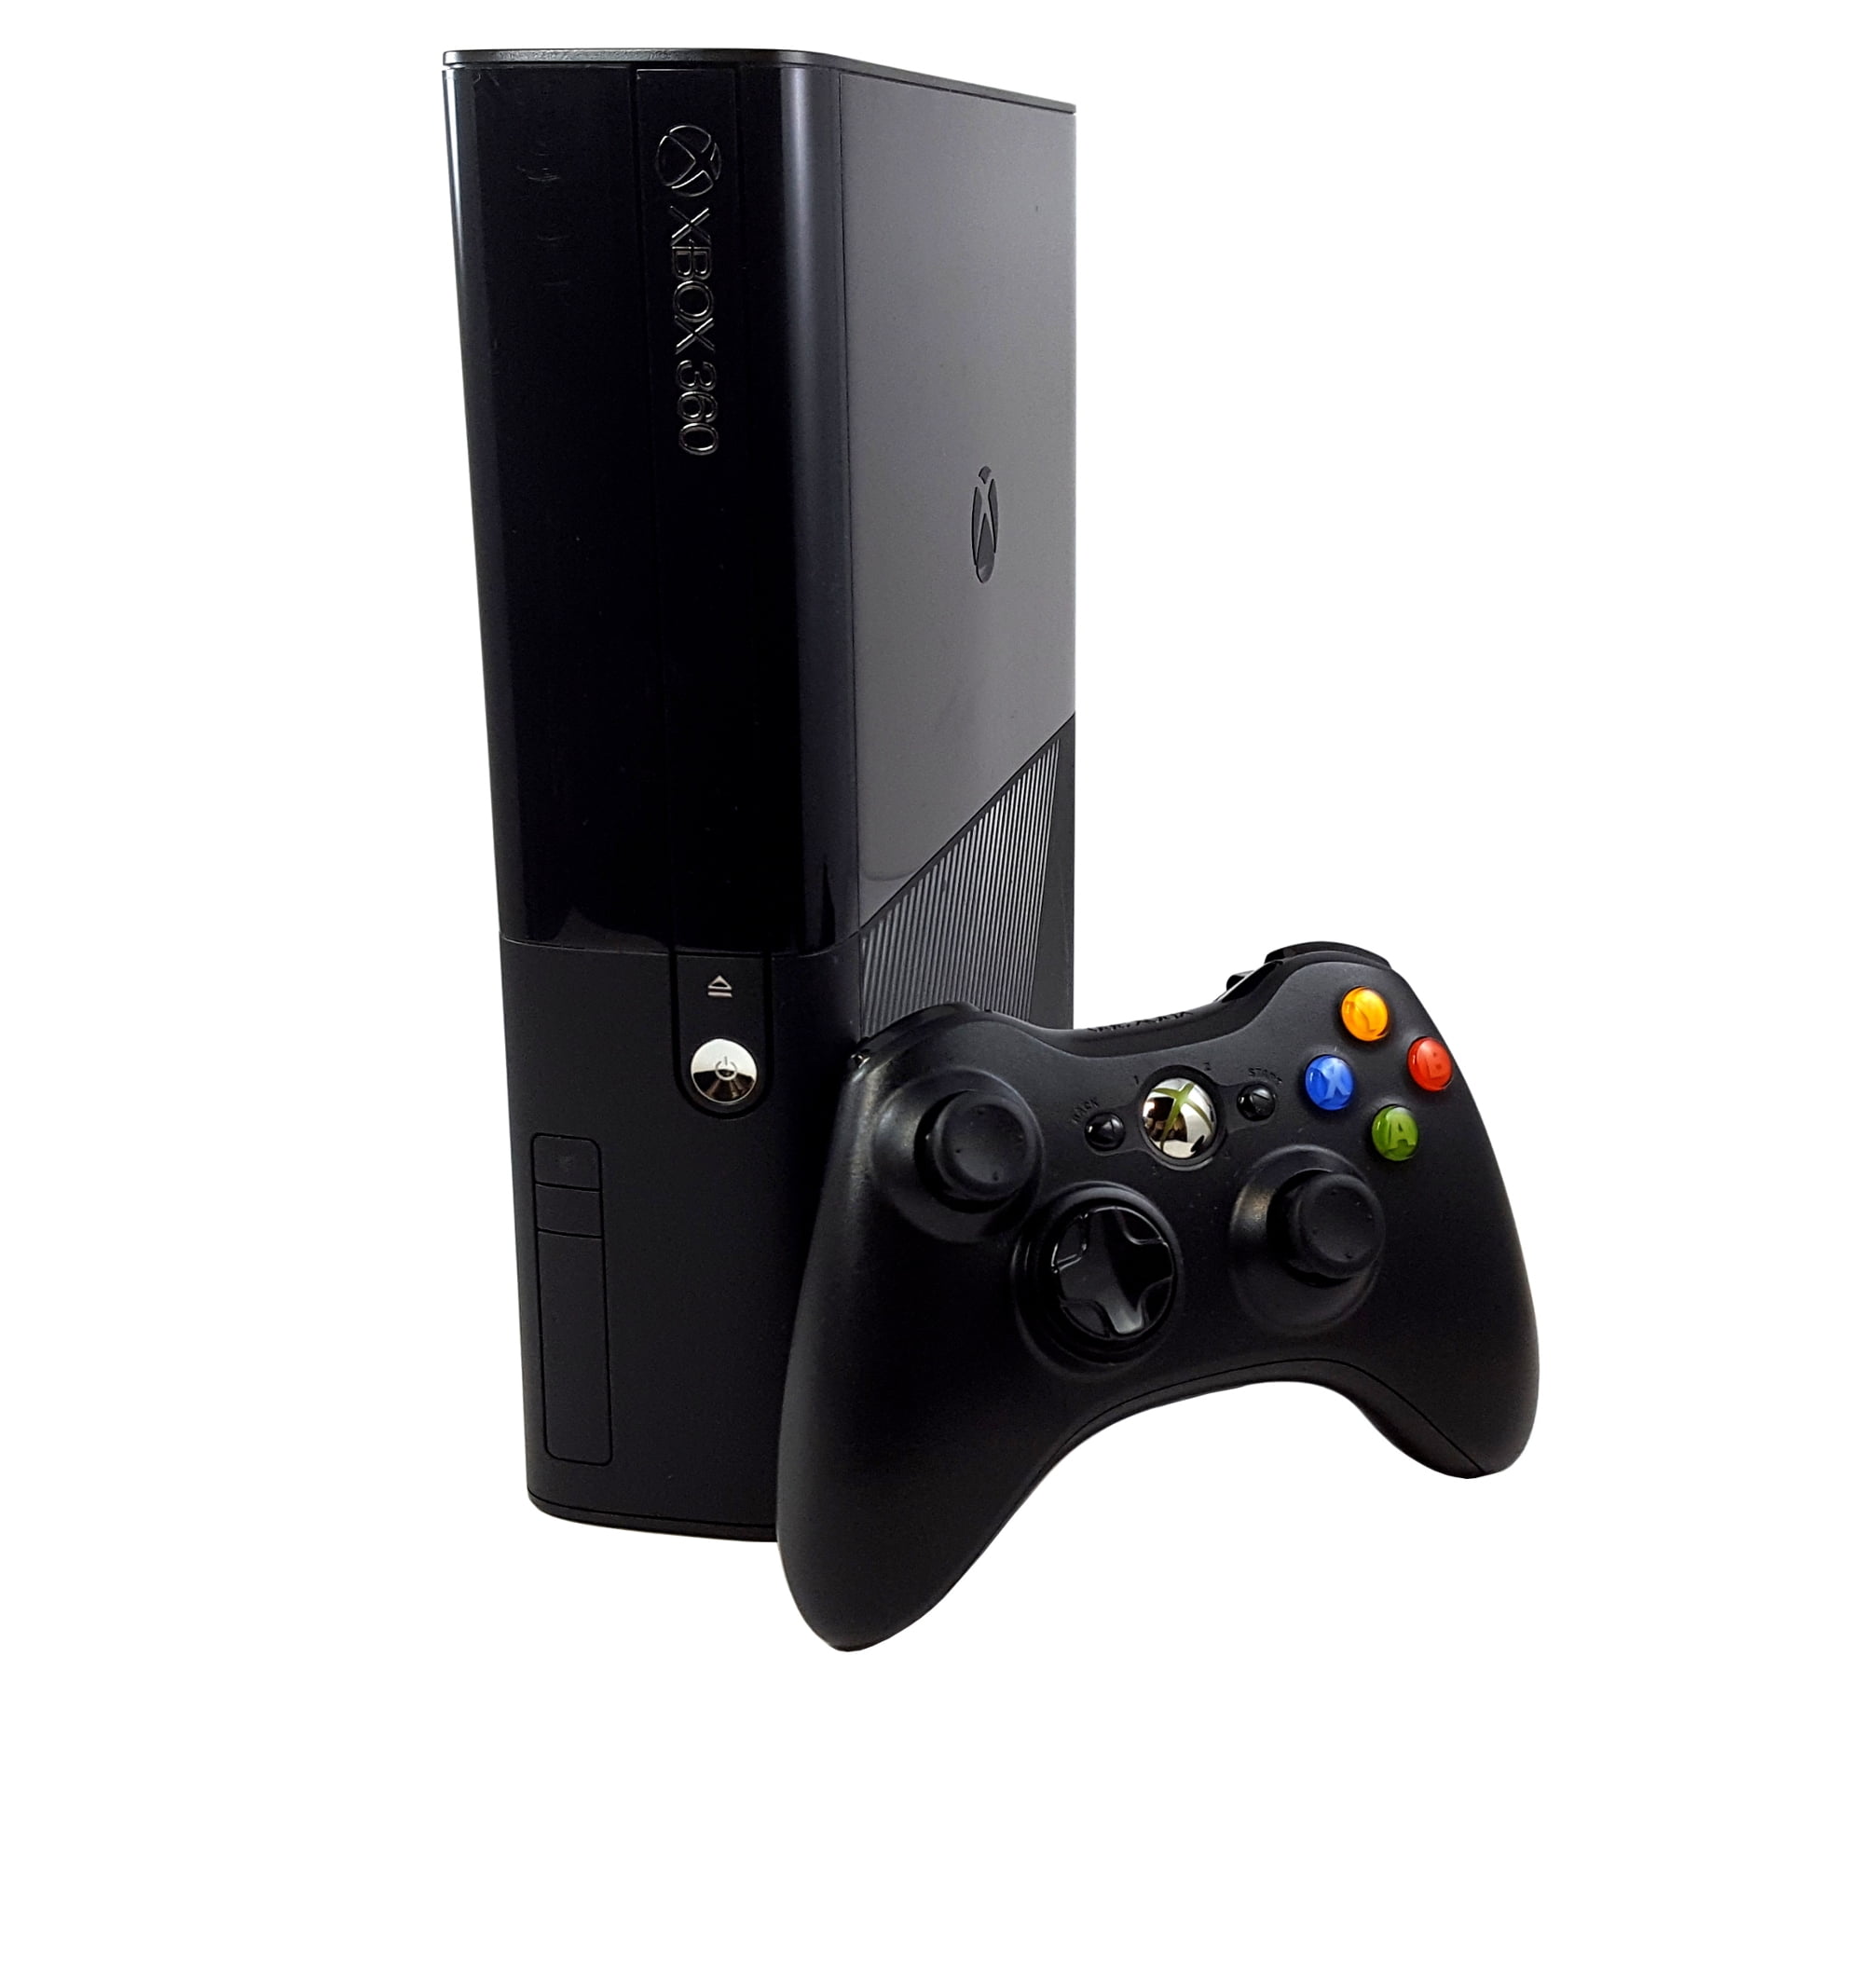 Microsoft Xbox 360 E 4GB Console renovado ao Melhor Preço